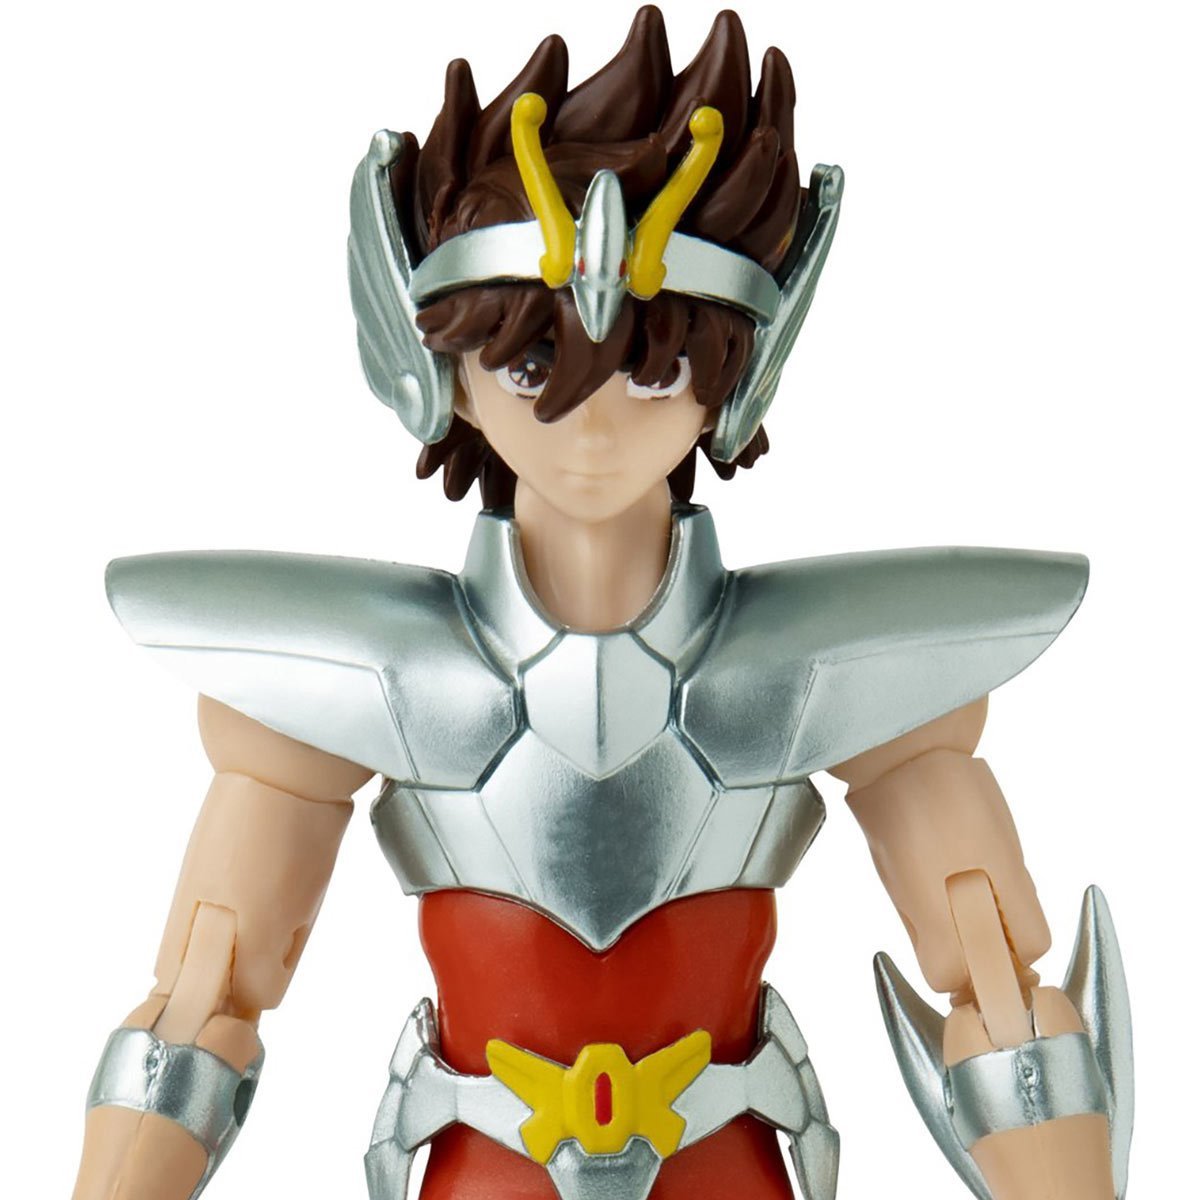 Saint Seiya - Pegasus Seiya - Anime Heroes - Bandai action figure